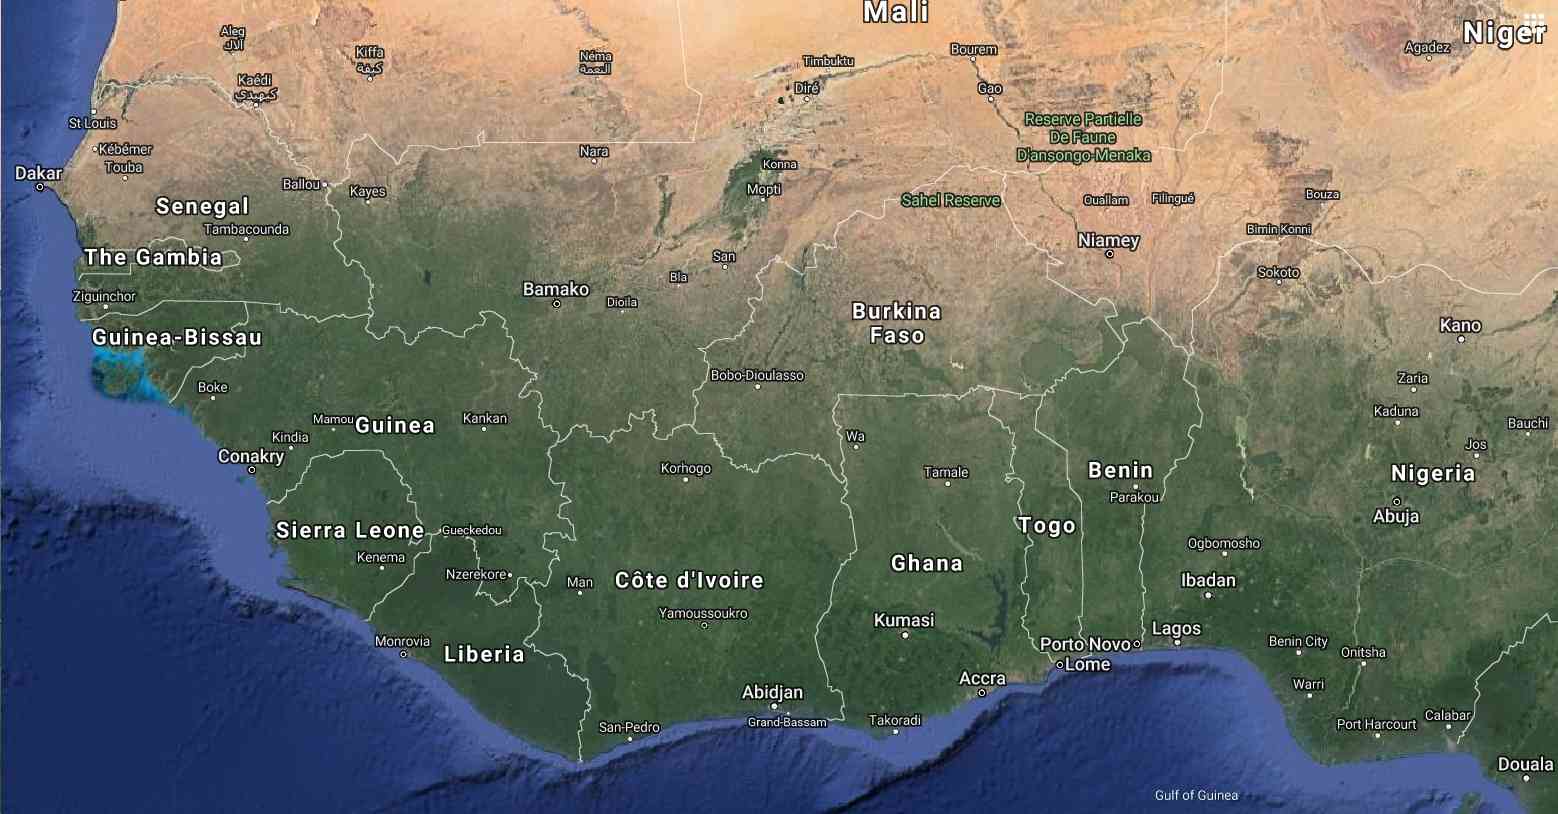 Cristianos atacados en ataque mortal en Burkina Faso